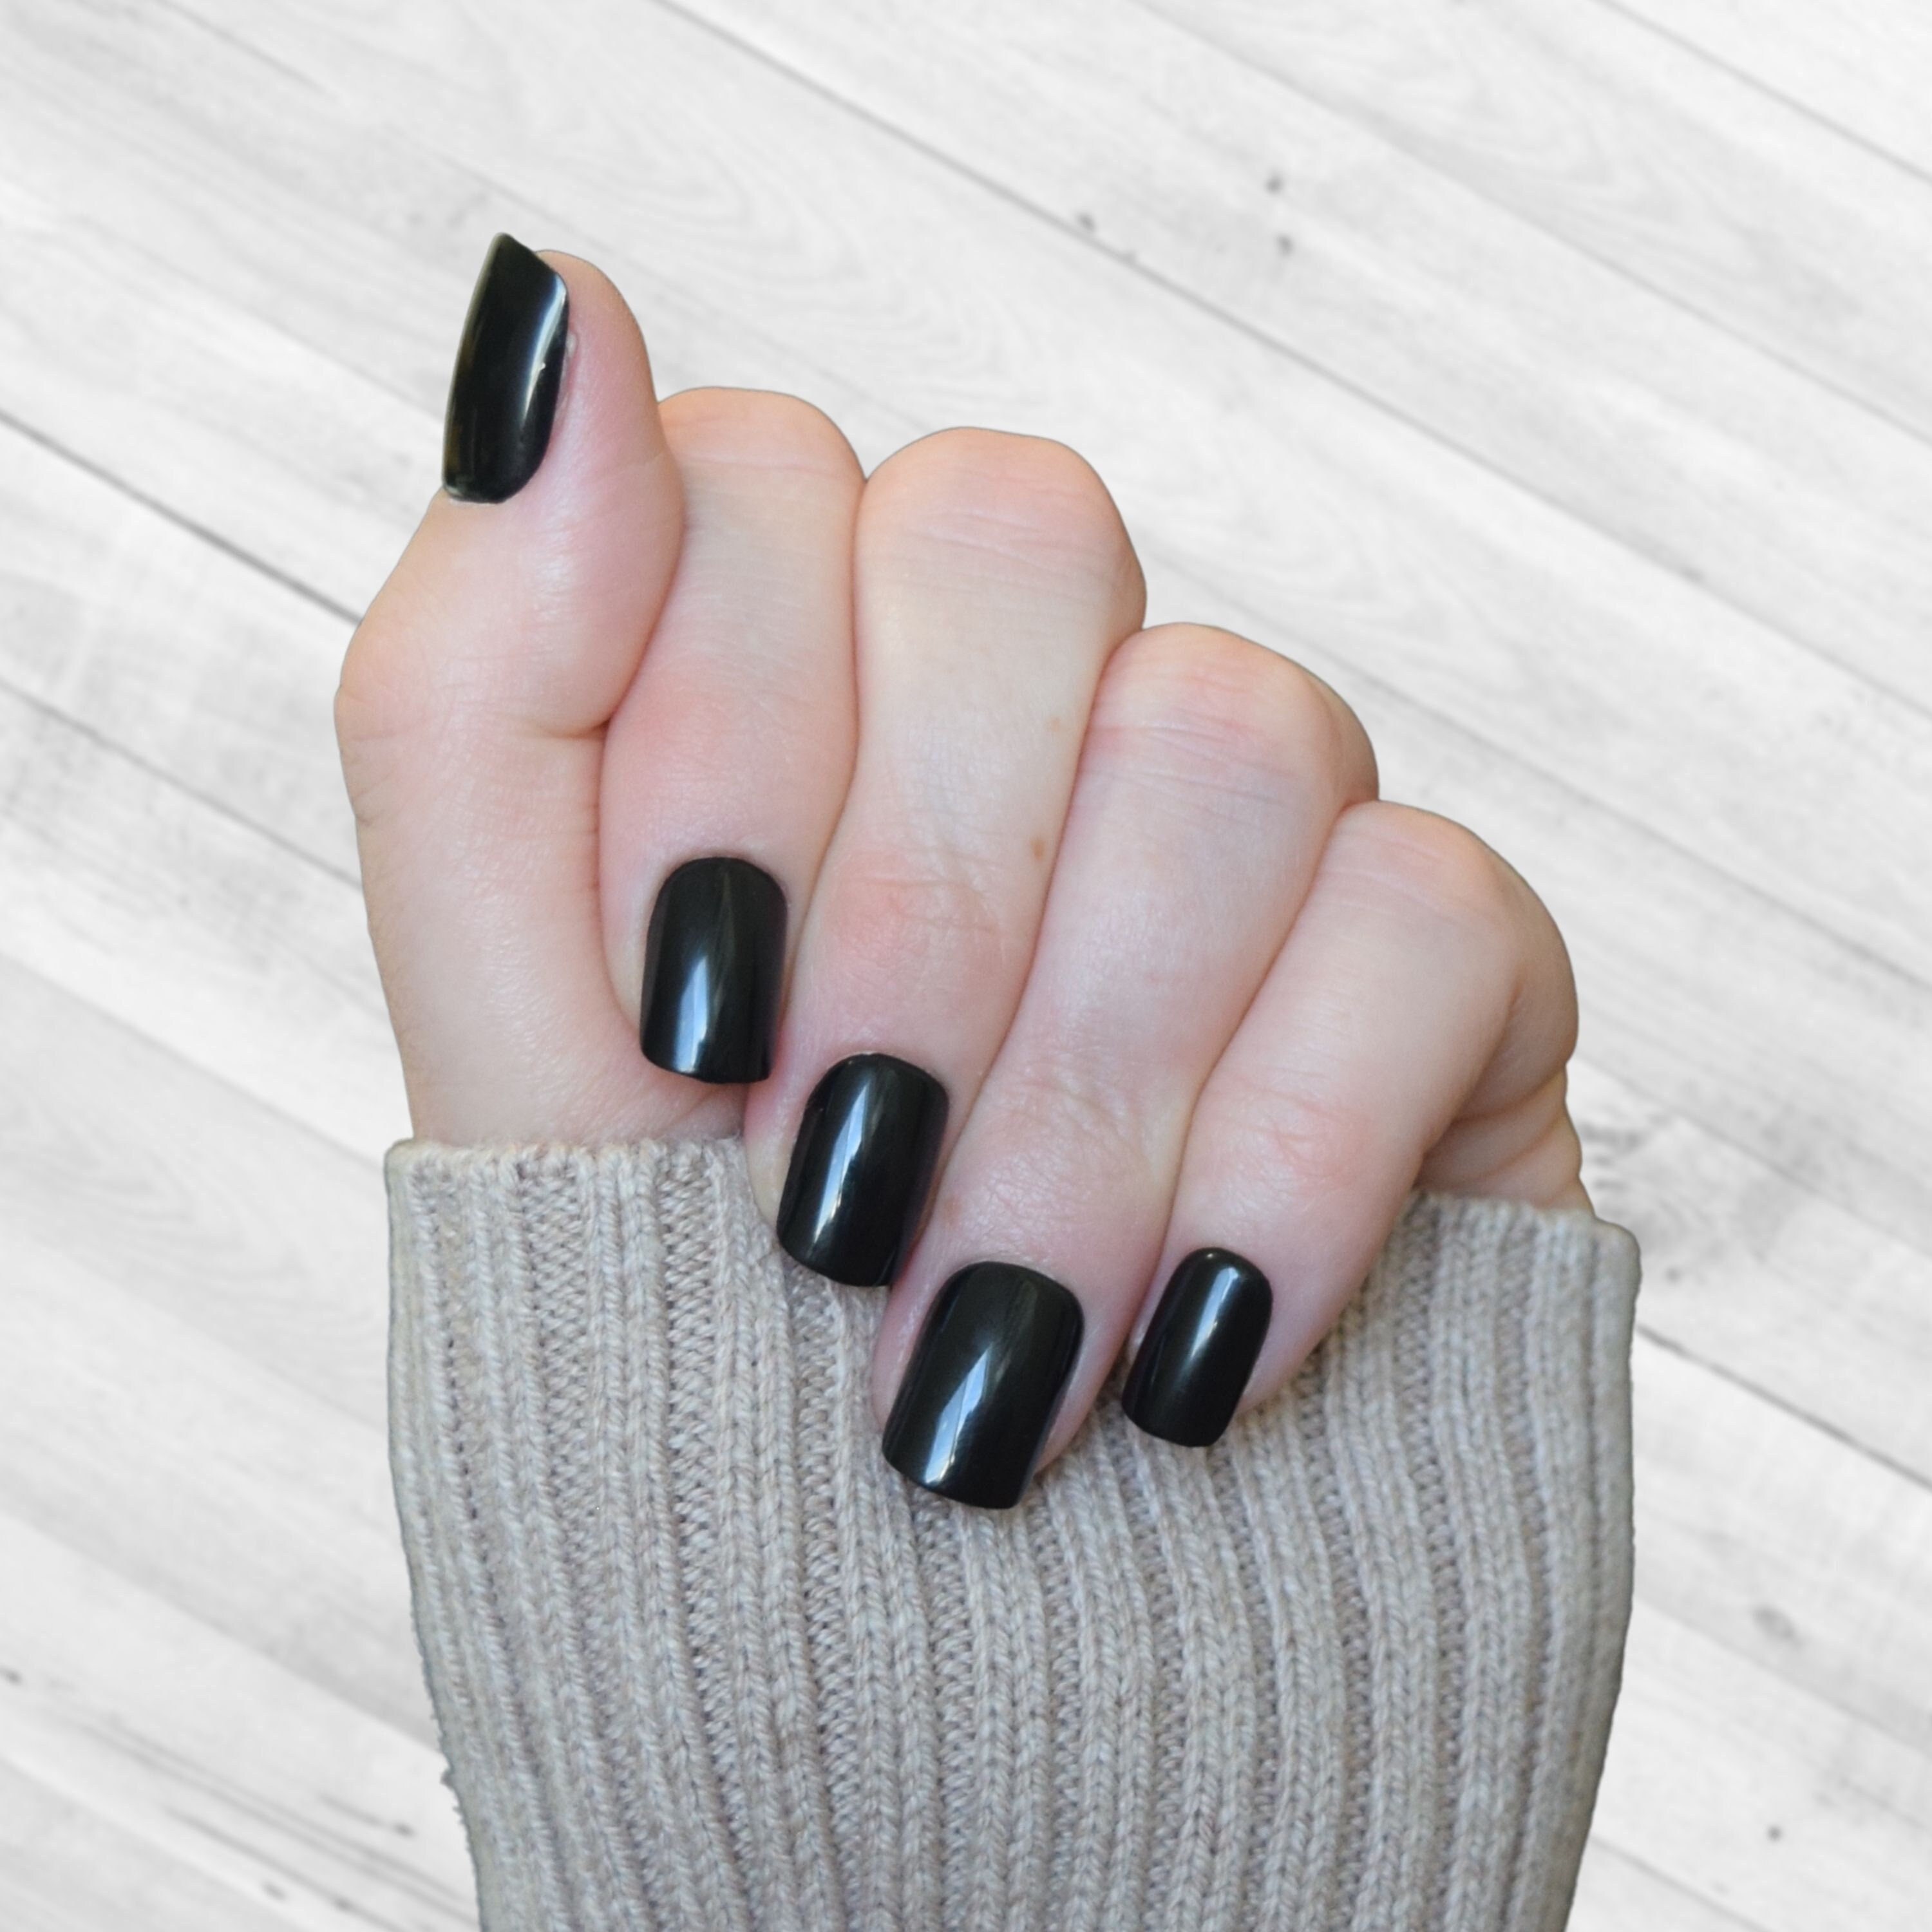 13 Black Acrylic Nails and Polish  Gel nails, Acrylic nails, Black nails